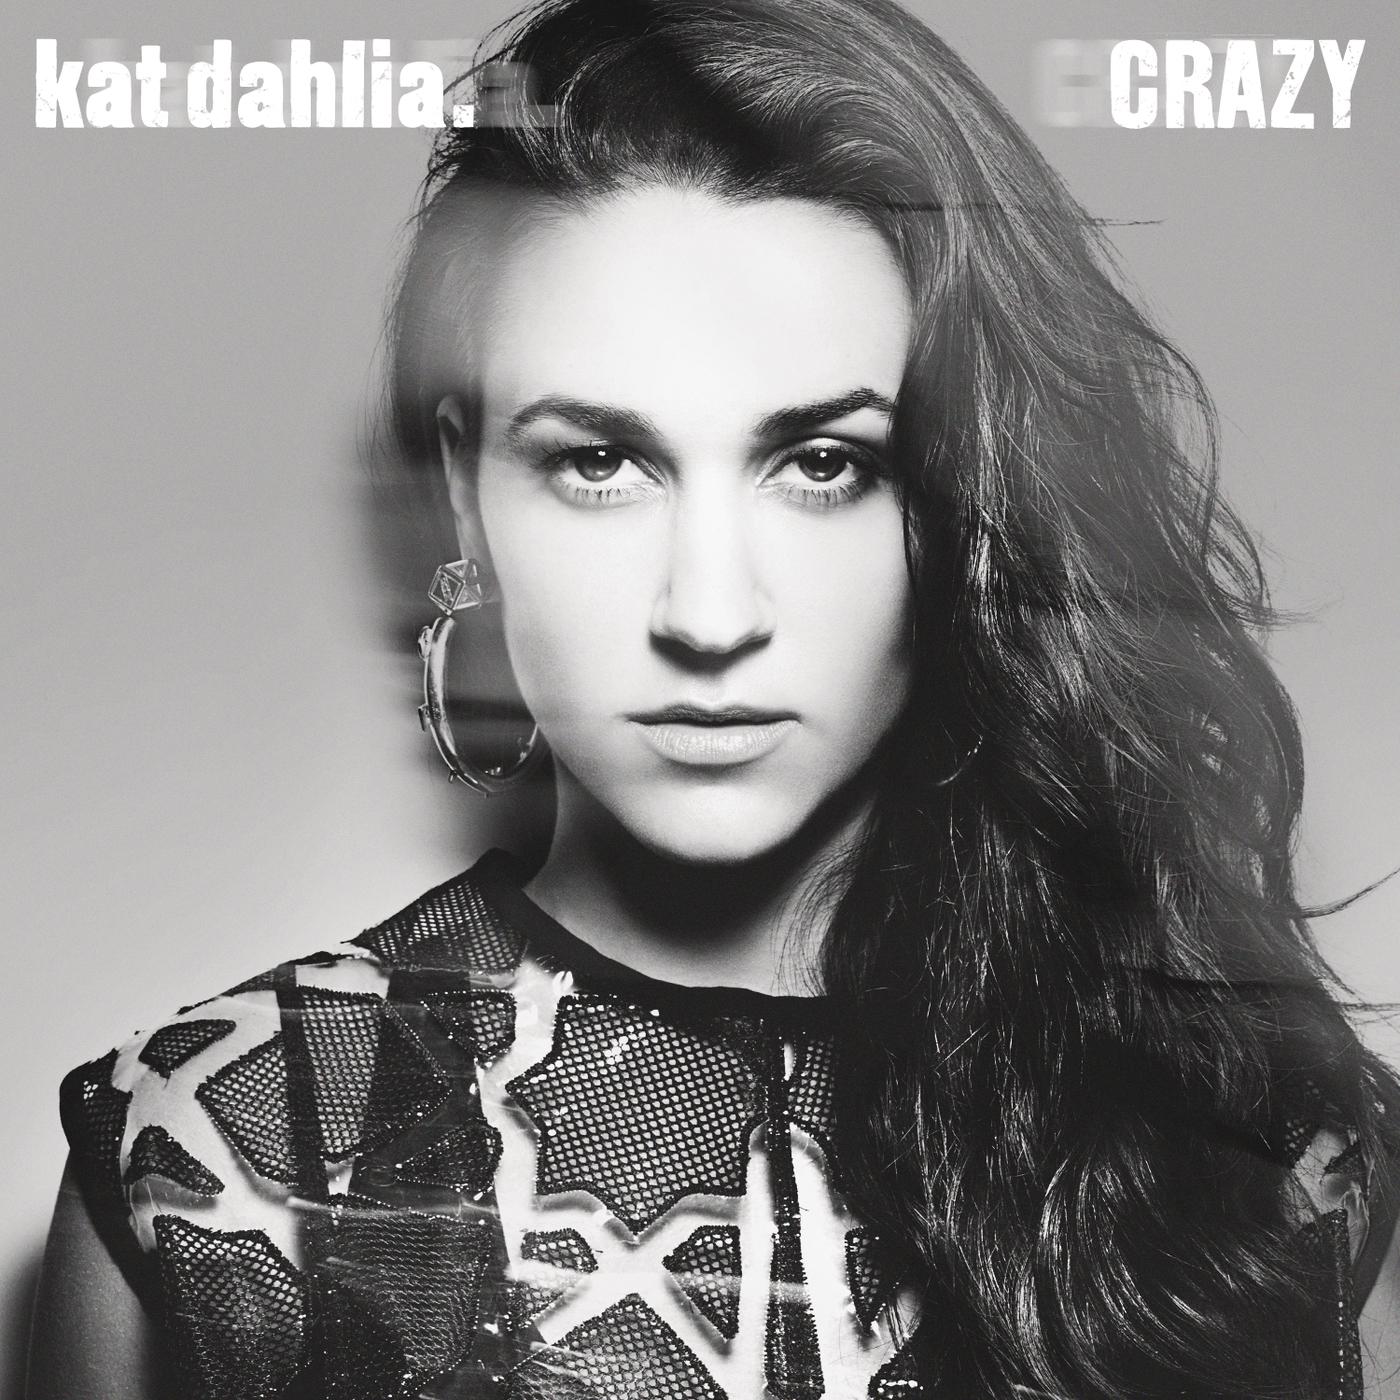 Crazy.Kat Dahlia.(Crazy)专 辑.(Crazy)专 辑 下 载.(Crazy)专 辑 在 线 试 听.(Crazy)专 辑 歌 ...